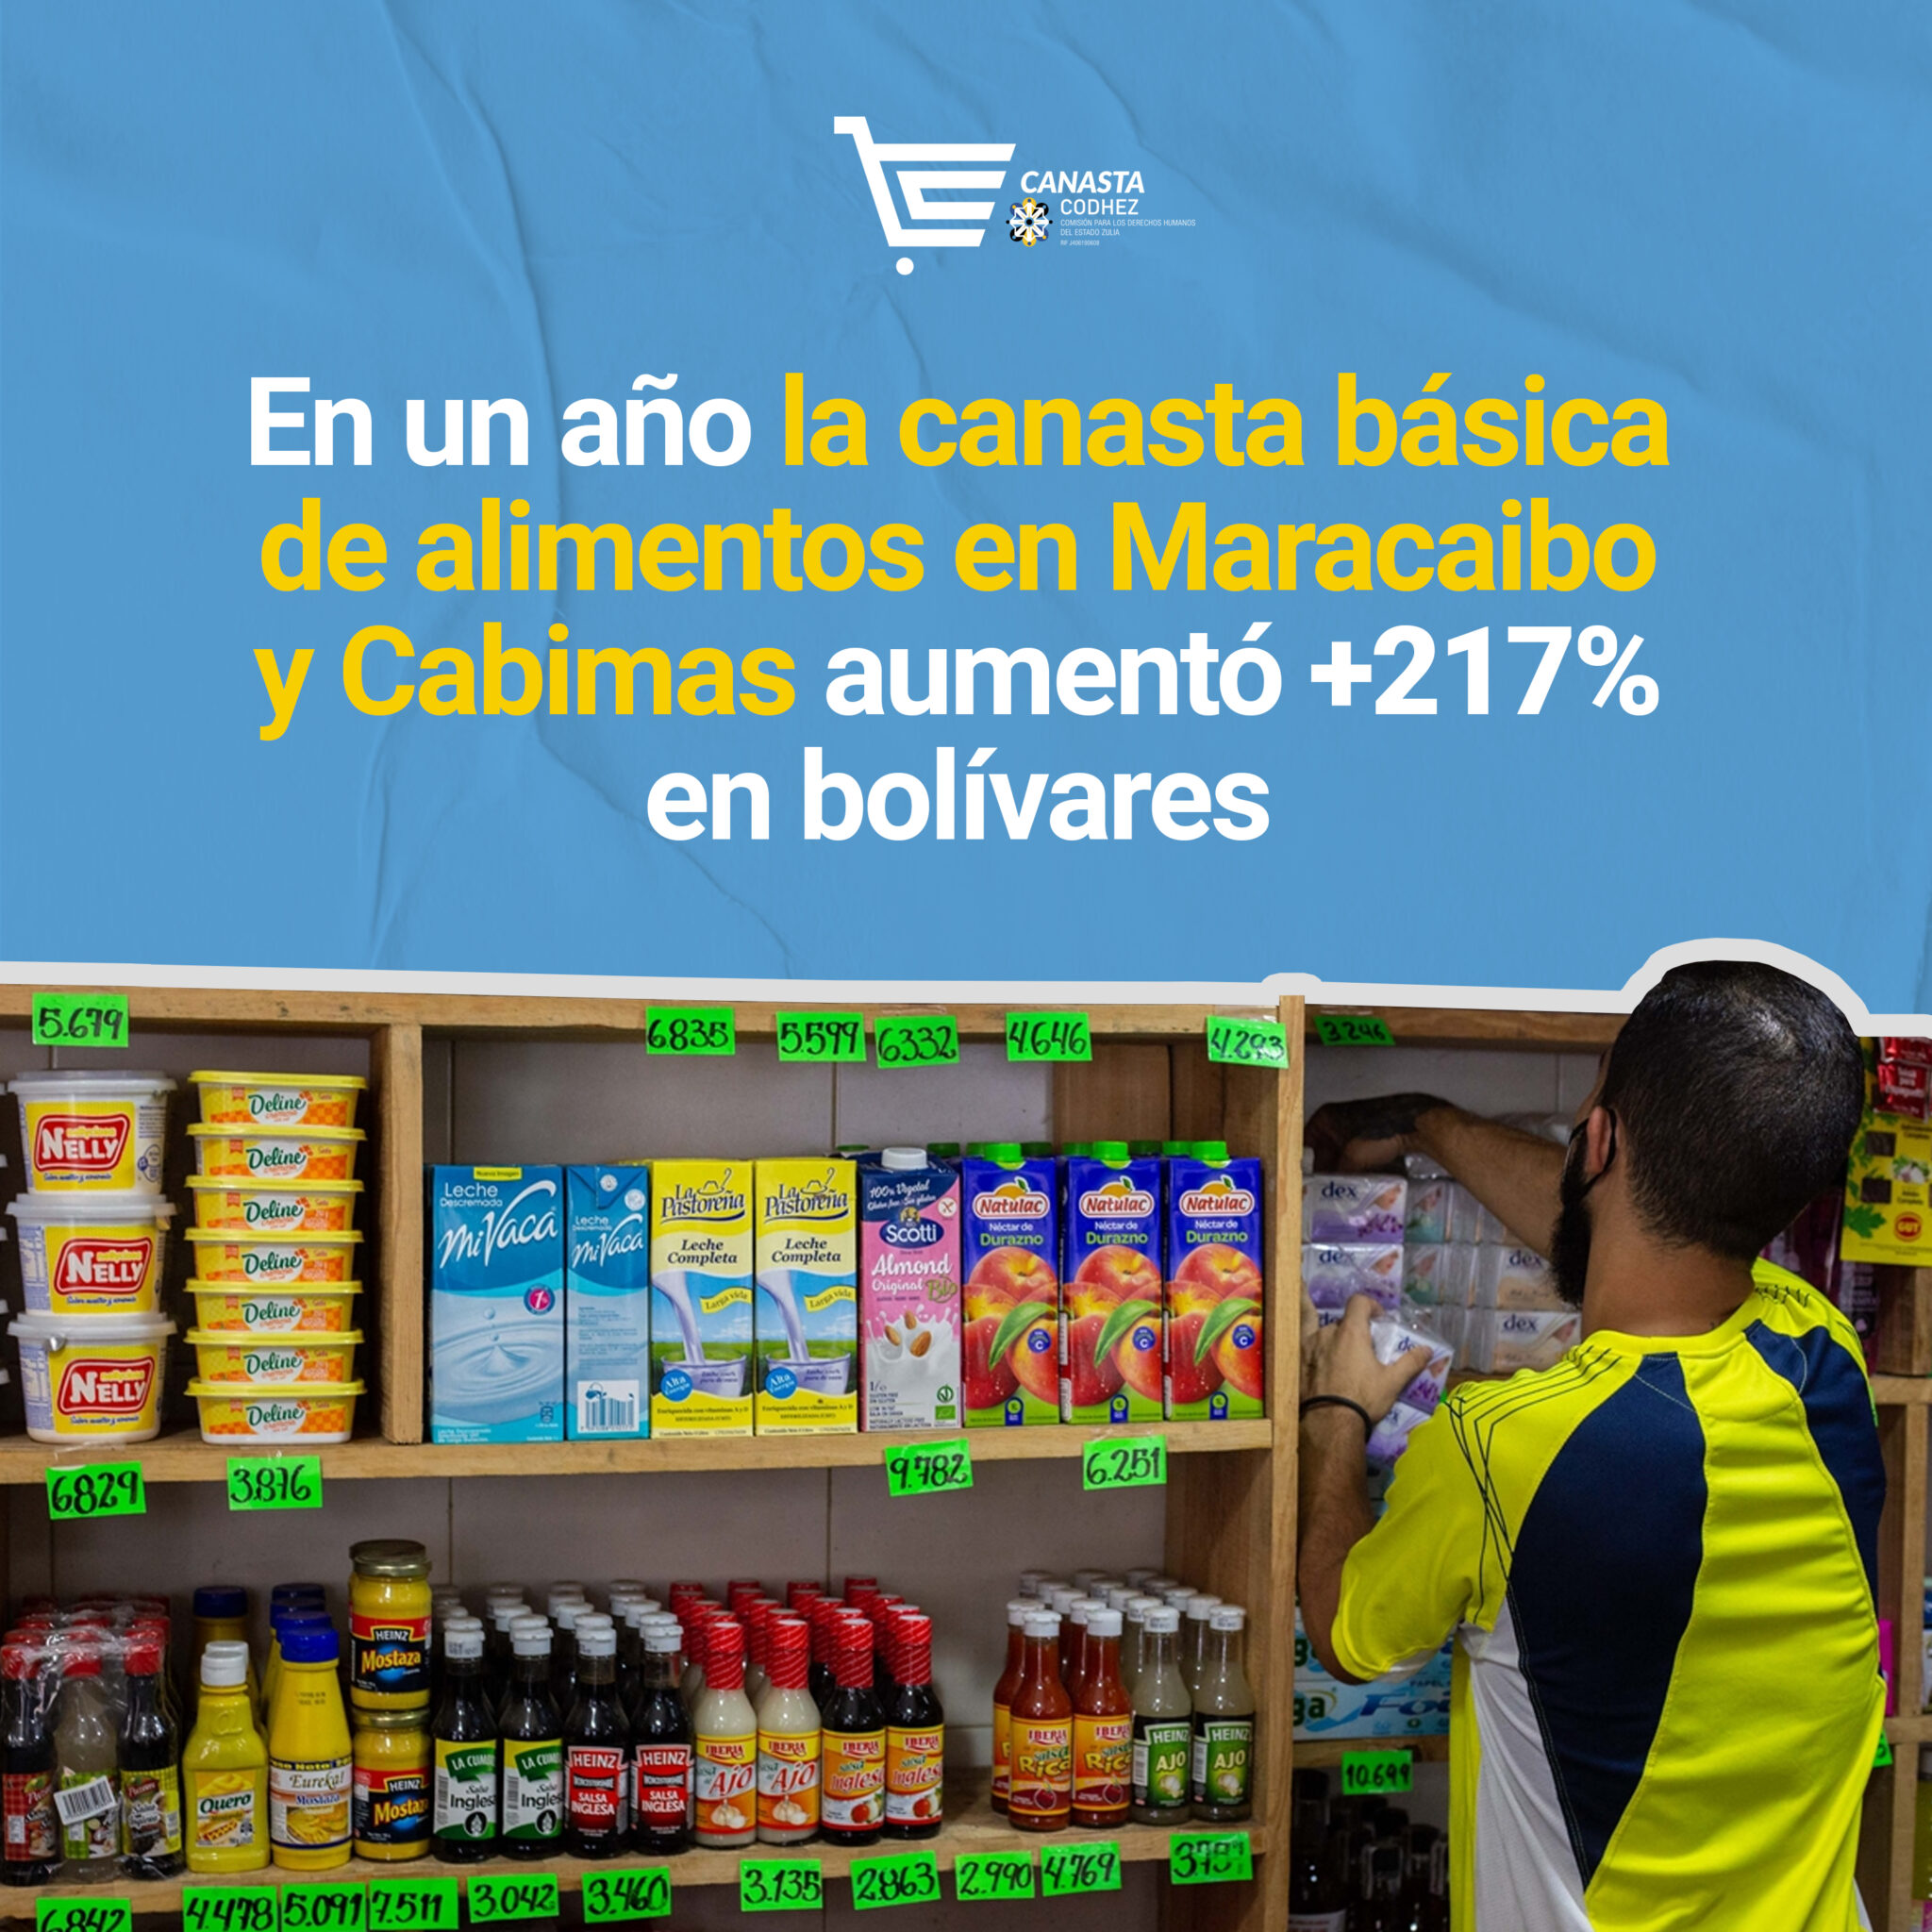 En un año el valor de la canasta básica alimentaria aumentó +217% en Maracaibo y Cabimas